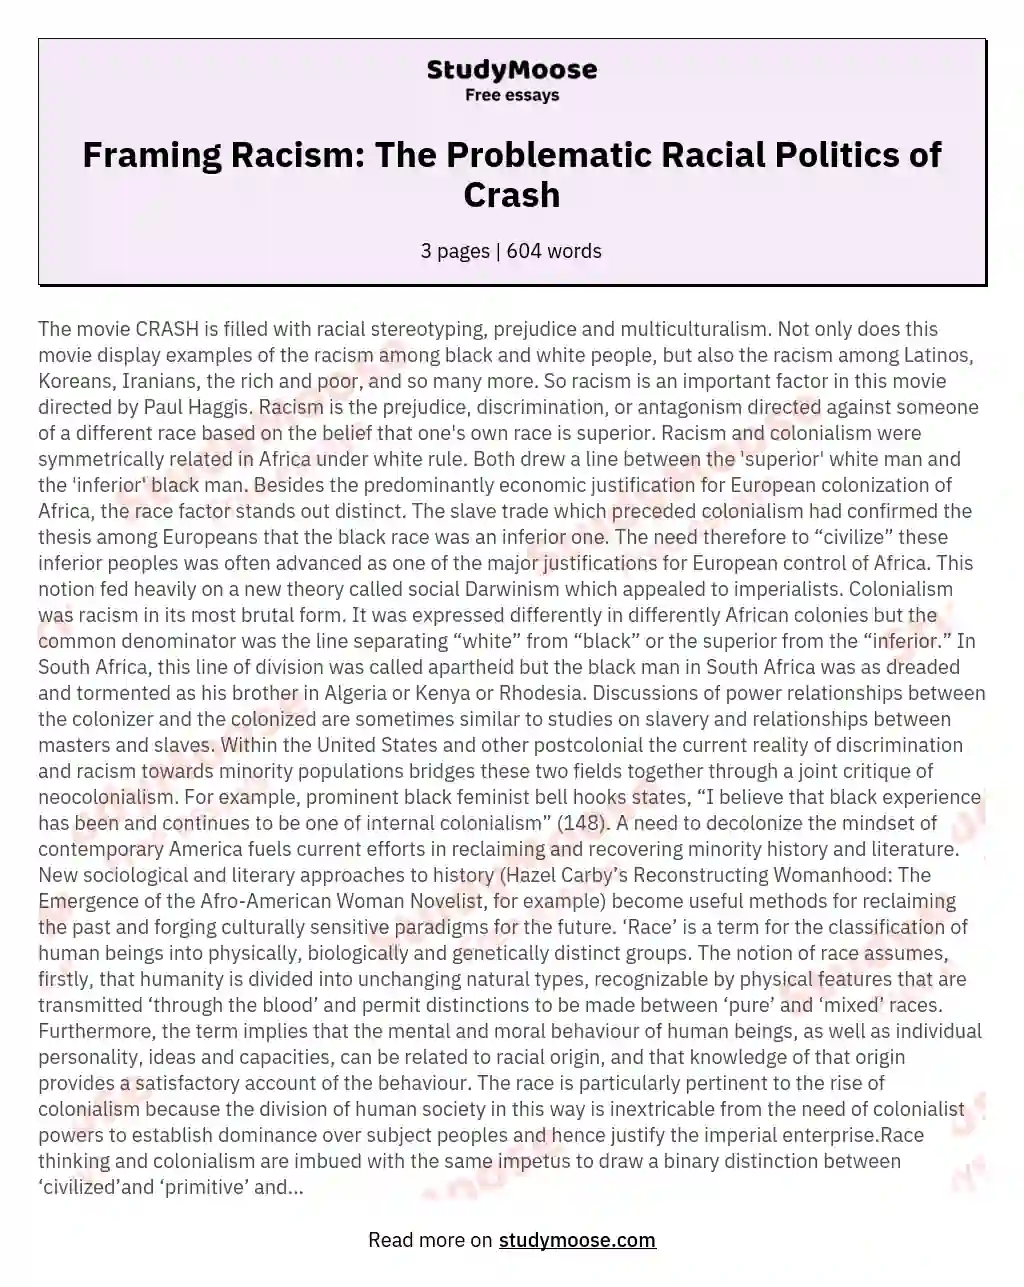 Framing Racism: The Problematic Racial Politics of Crash essay